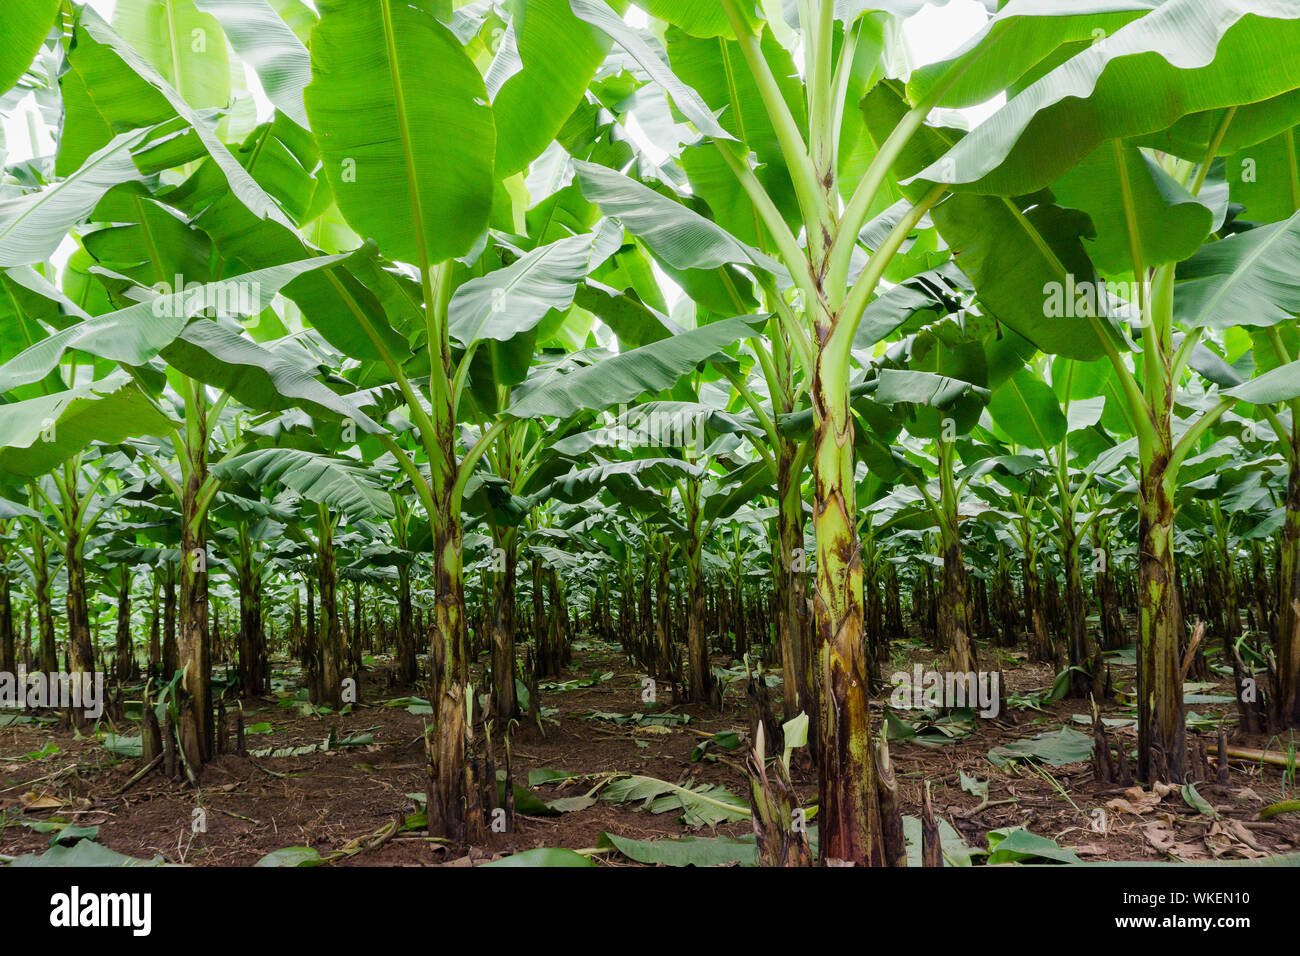 Banana Trees On Field Stock Photo - Alamy